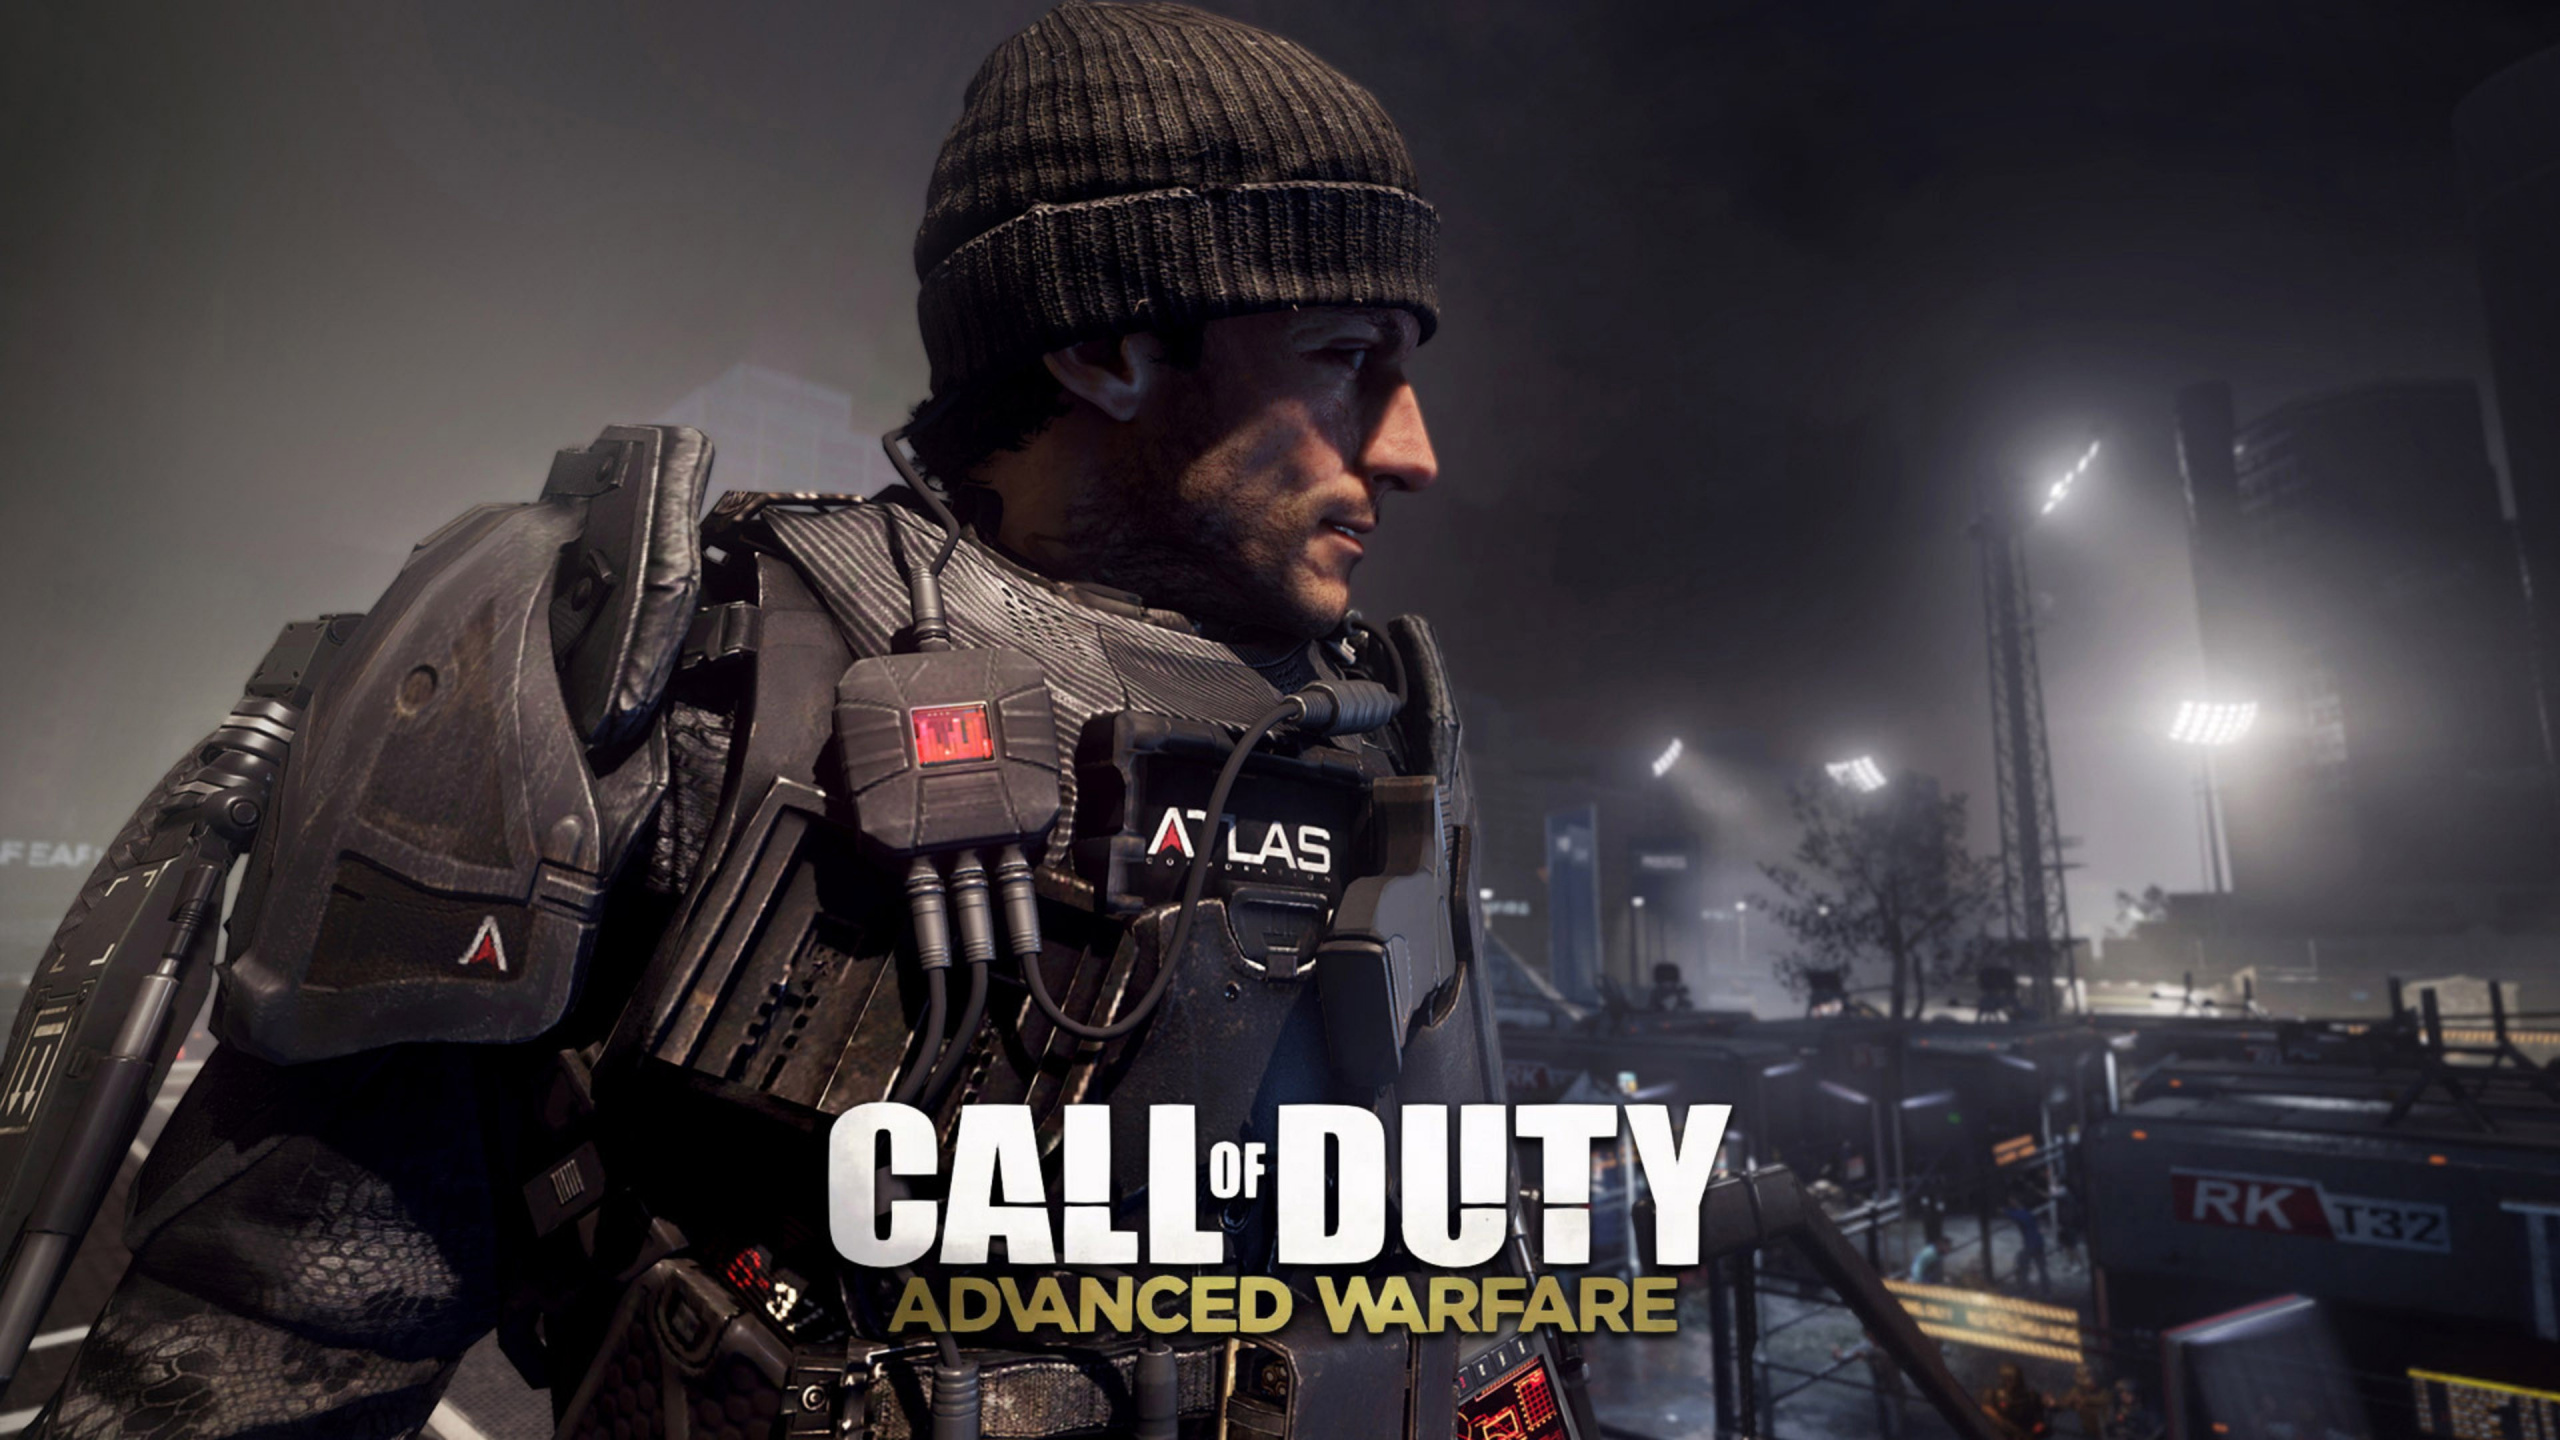 Call of Duty Advanced Warfare, Sledgehammer Games, Multijoueur Jeu Vidéo, Jeu Pc, Soldat. Wallpaper in 2560x1440 Resolution